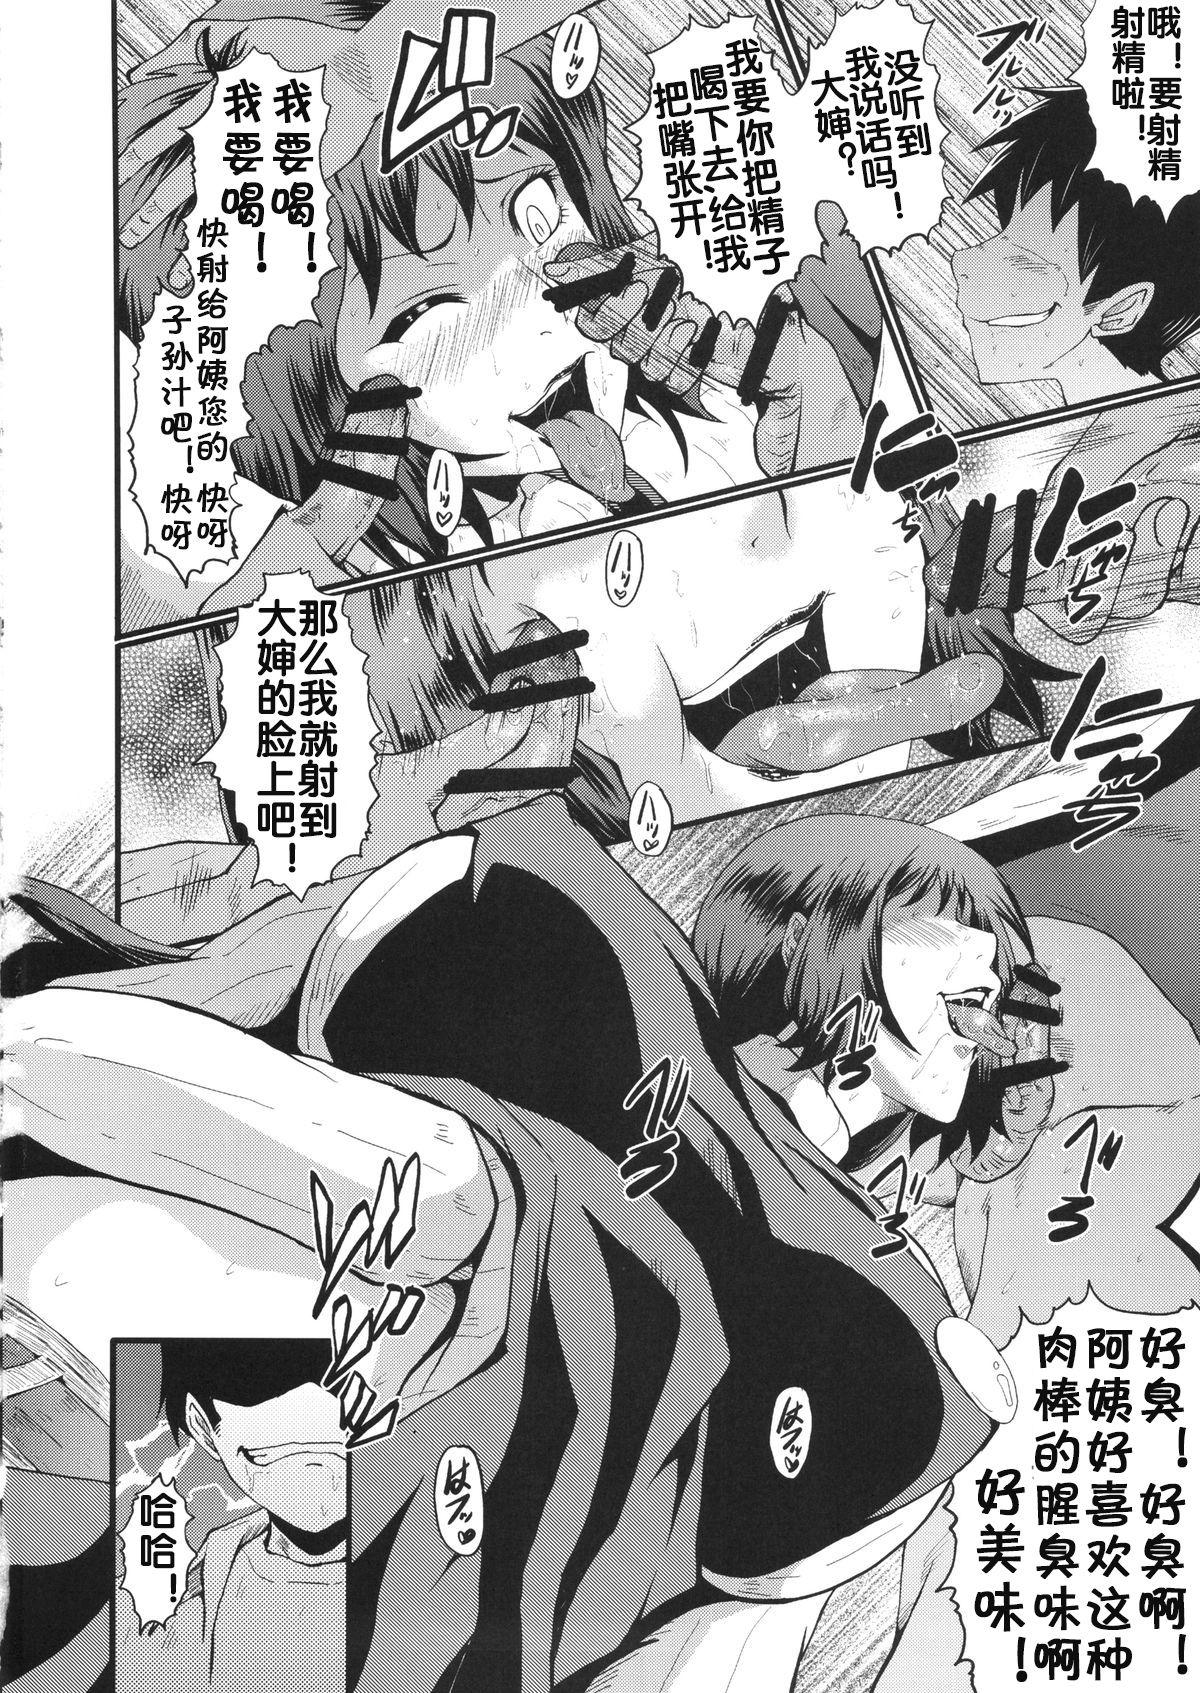 Pau Urabambi Vol. 49 Kaa-san wa Boku ga Shiranai Uchi ni Omanko ni DoHamari shite mashita. - Gundam build fighters Matures - Page 9